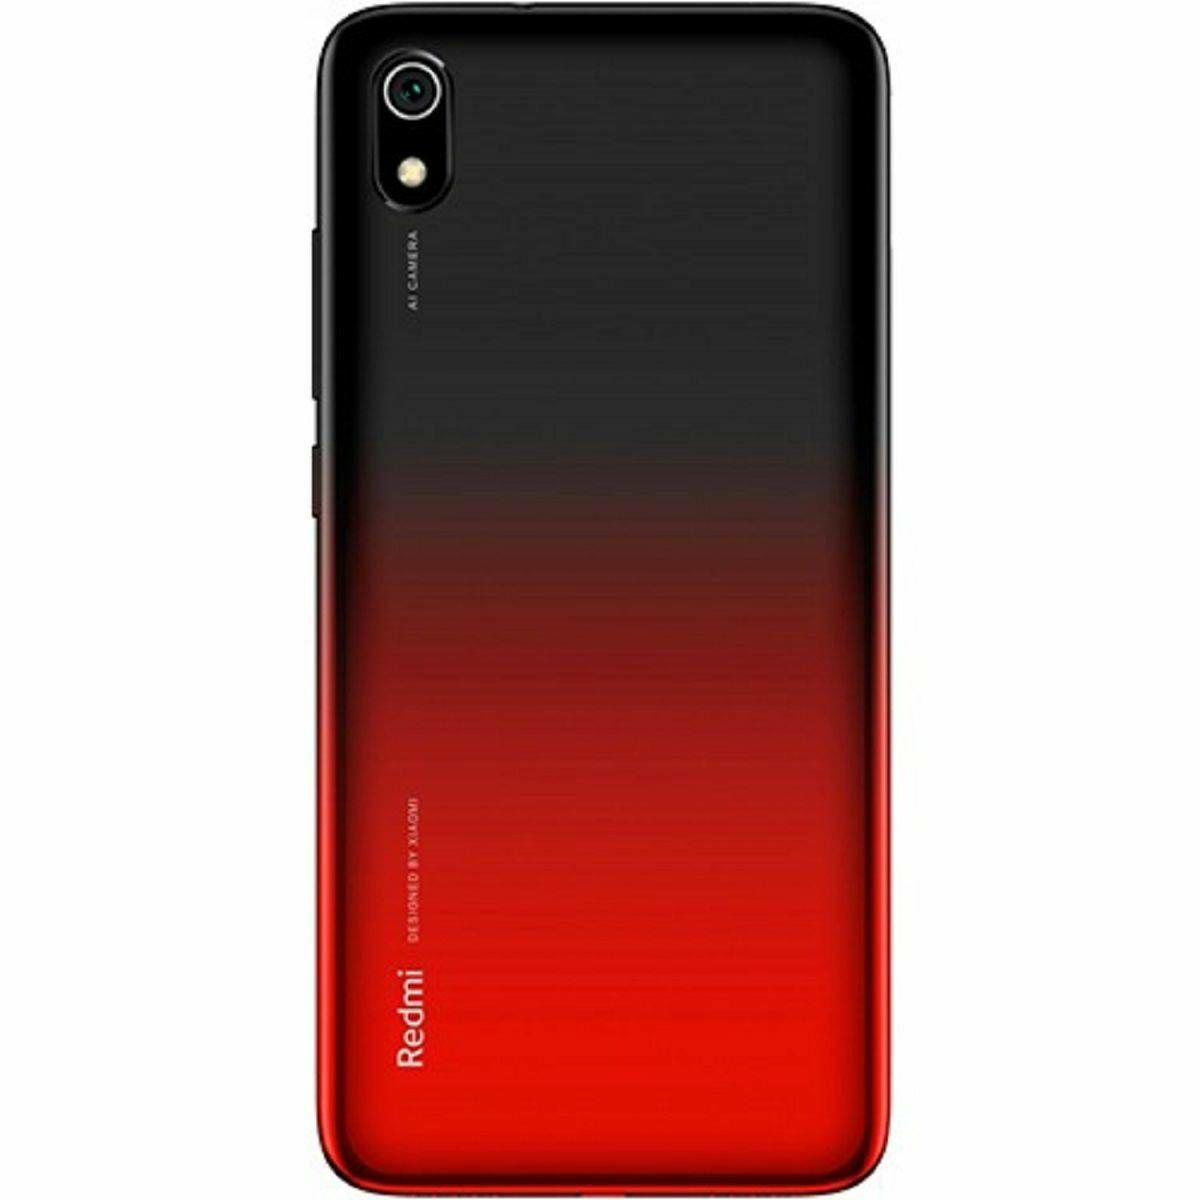 Xiaomi Redmi 7а